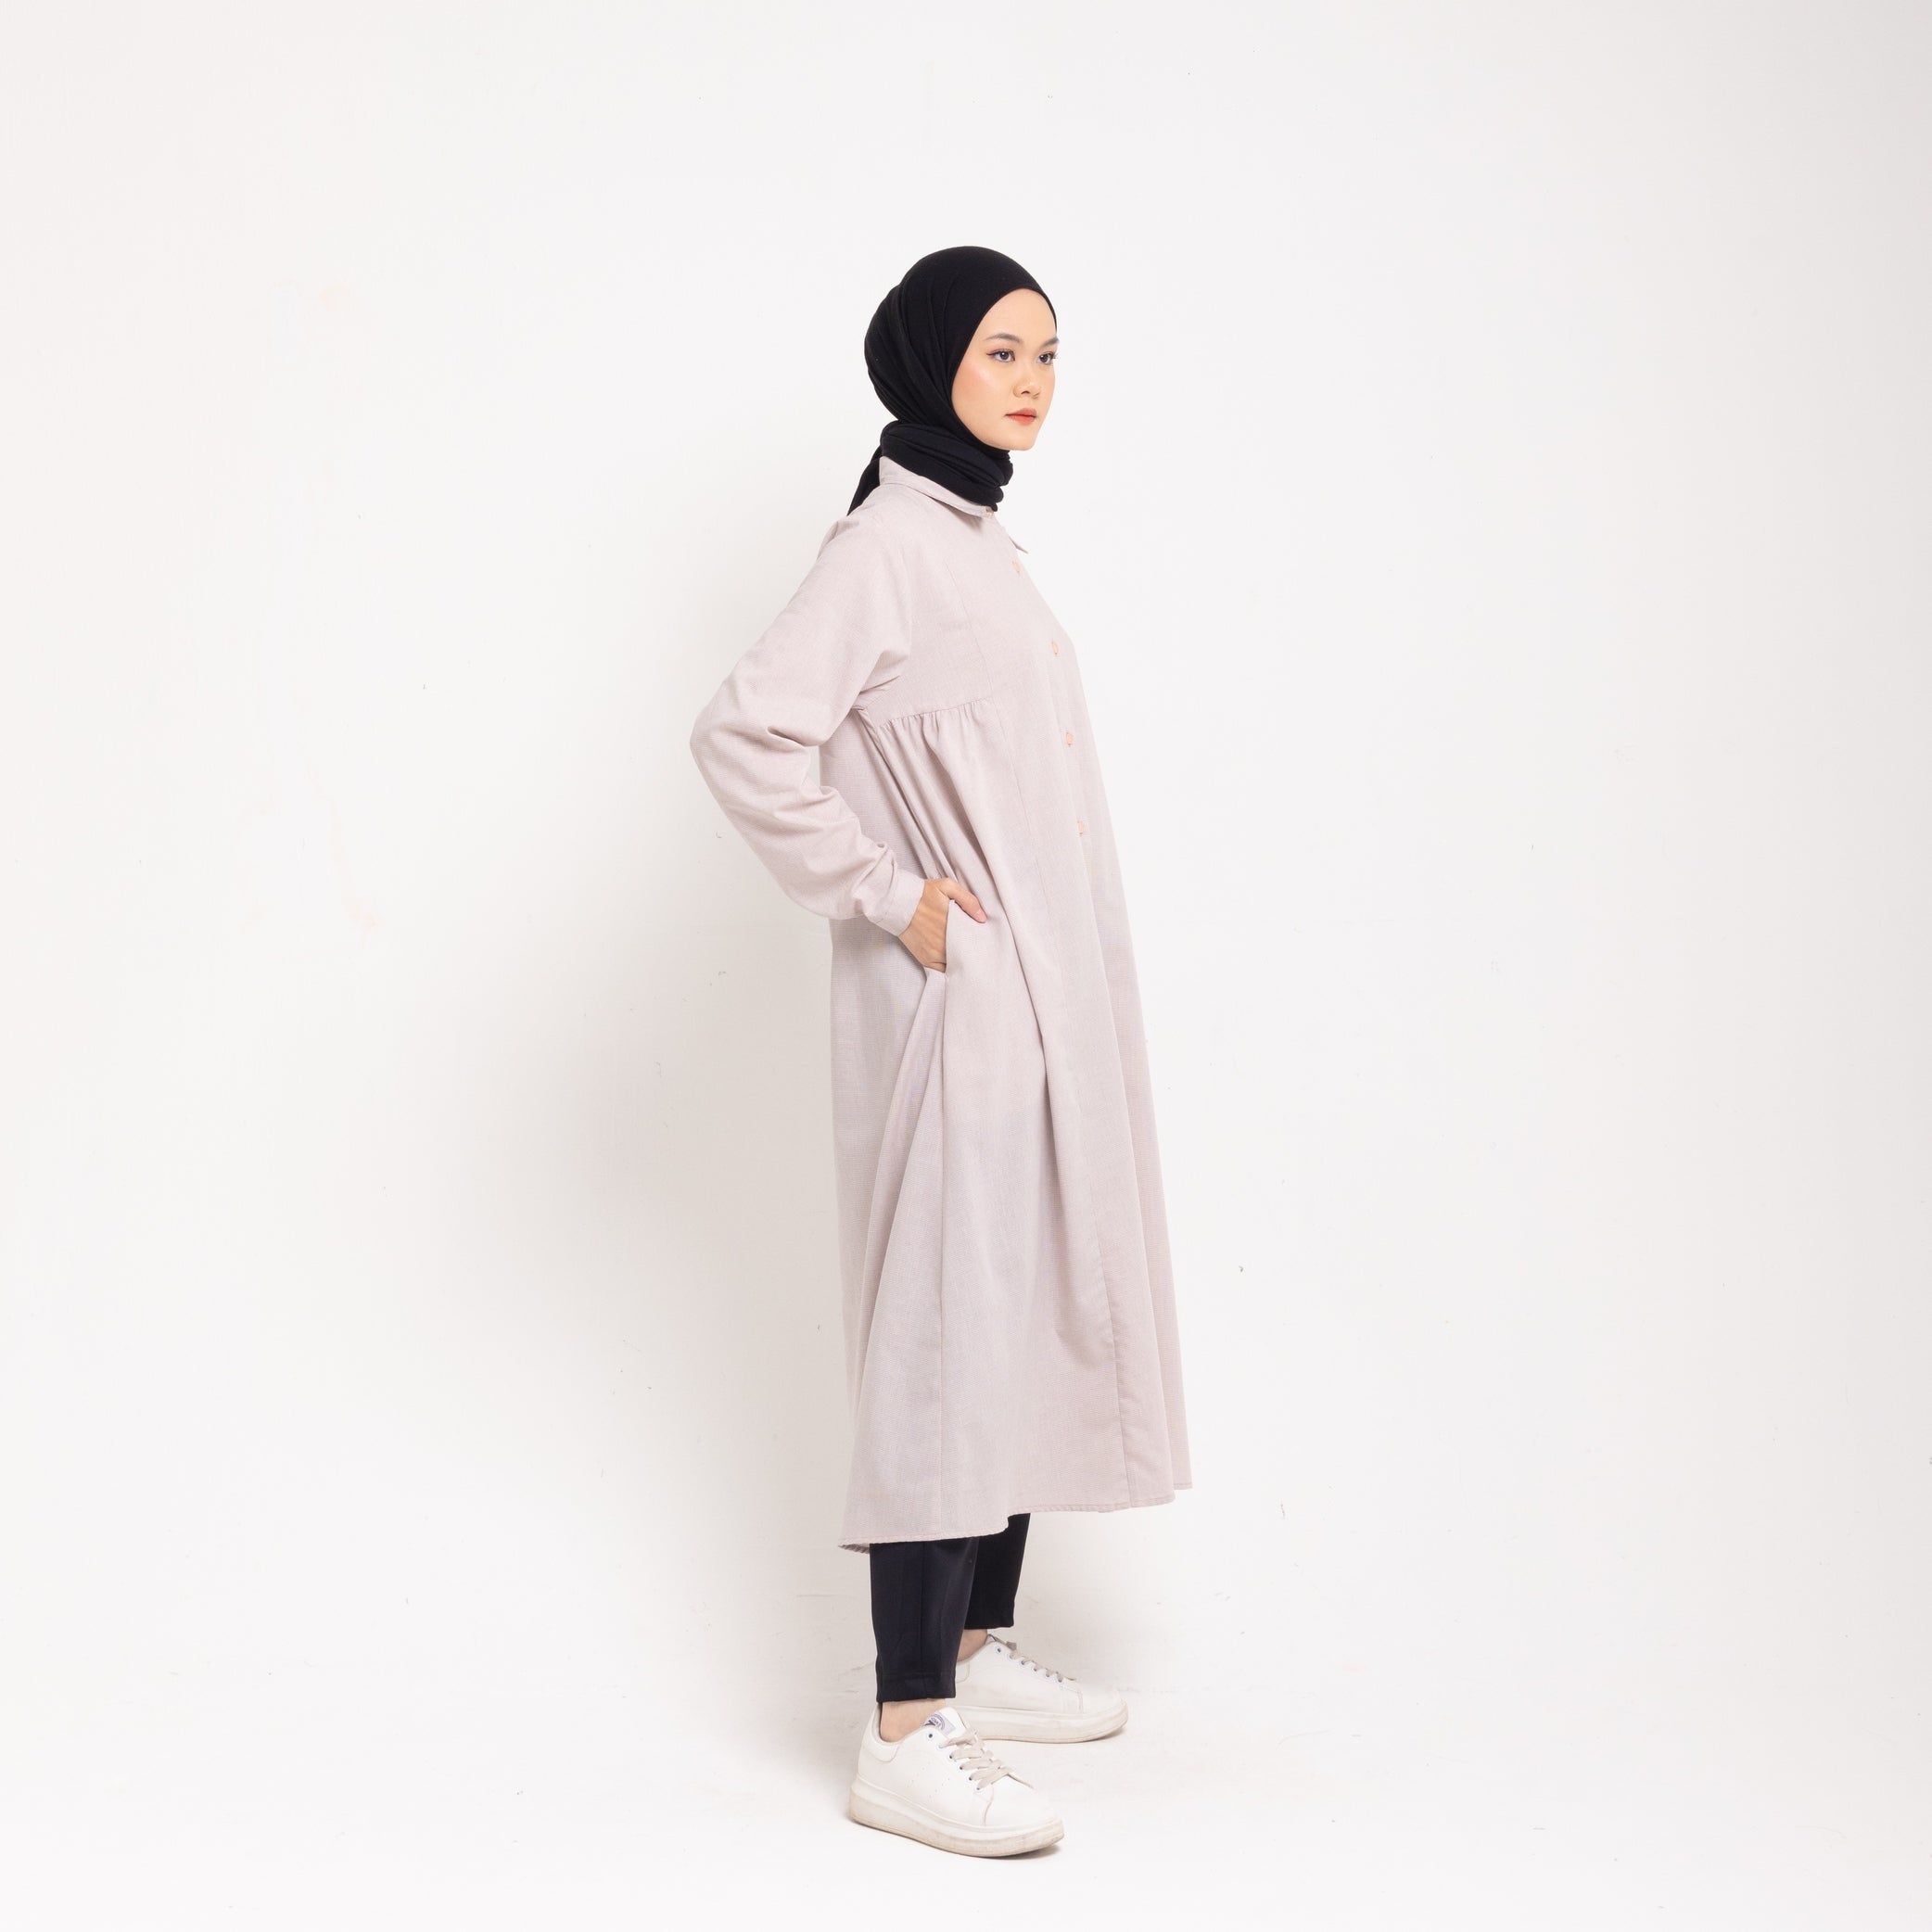 Dress Wanita Muslim Dauky M Dress Katun Houndstooth Executive Collection- Coklat